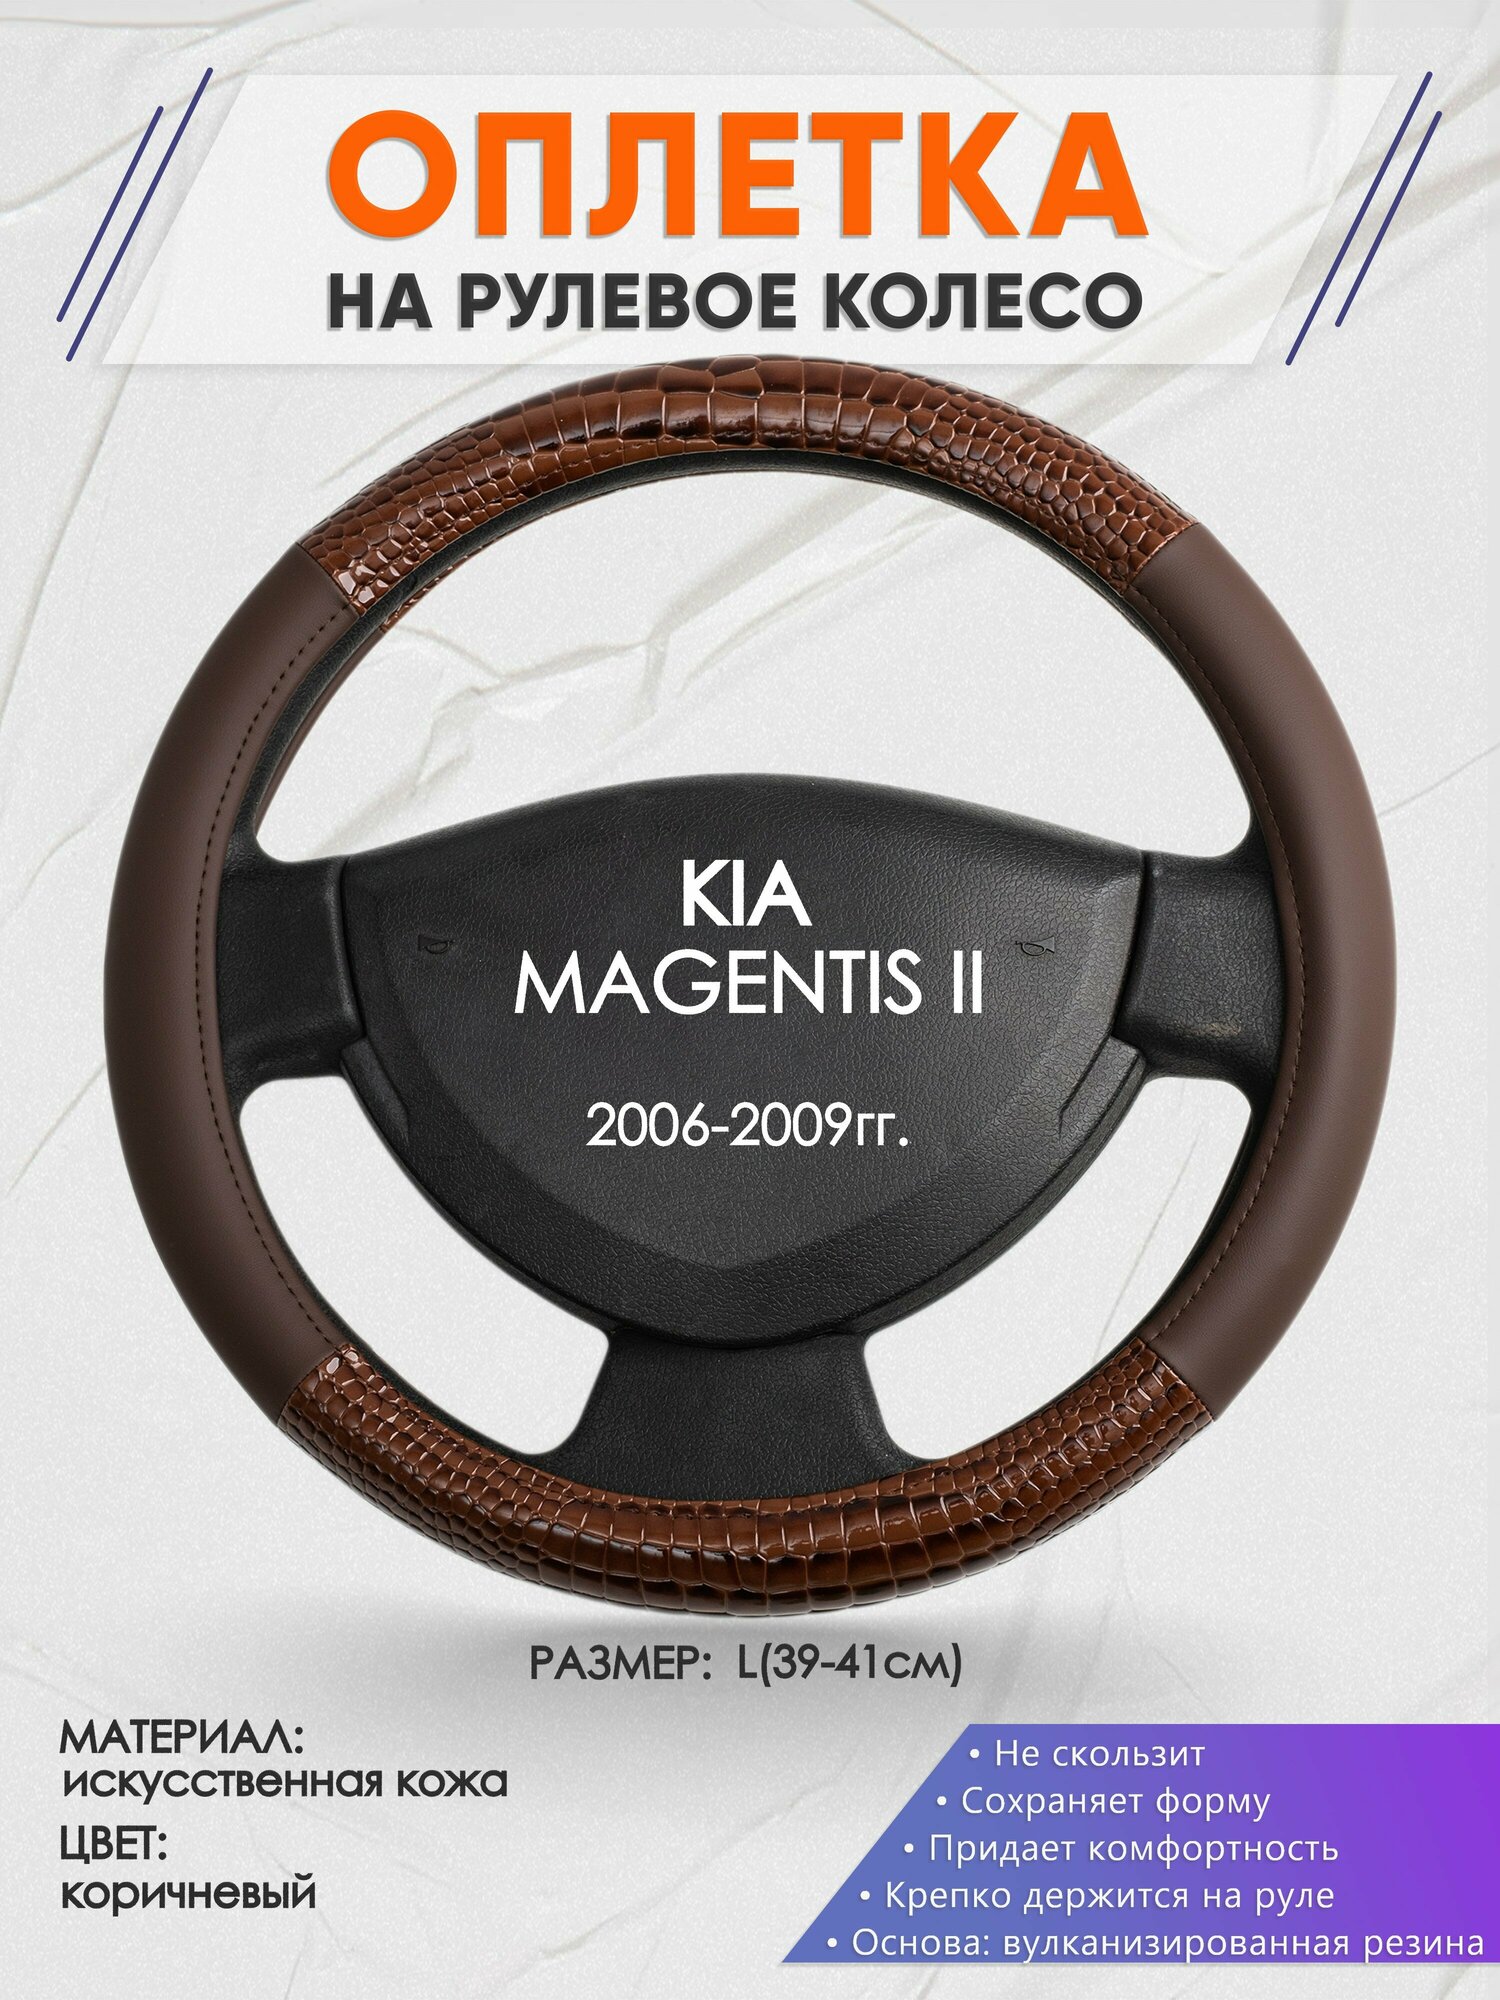 Оплетка на руль для KIA MAGENTIS 2(Киа Маджентис 2) 2006-2009, L(39-41см), Искусственная кожа 85